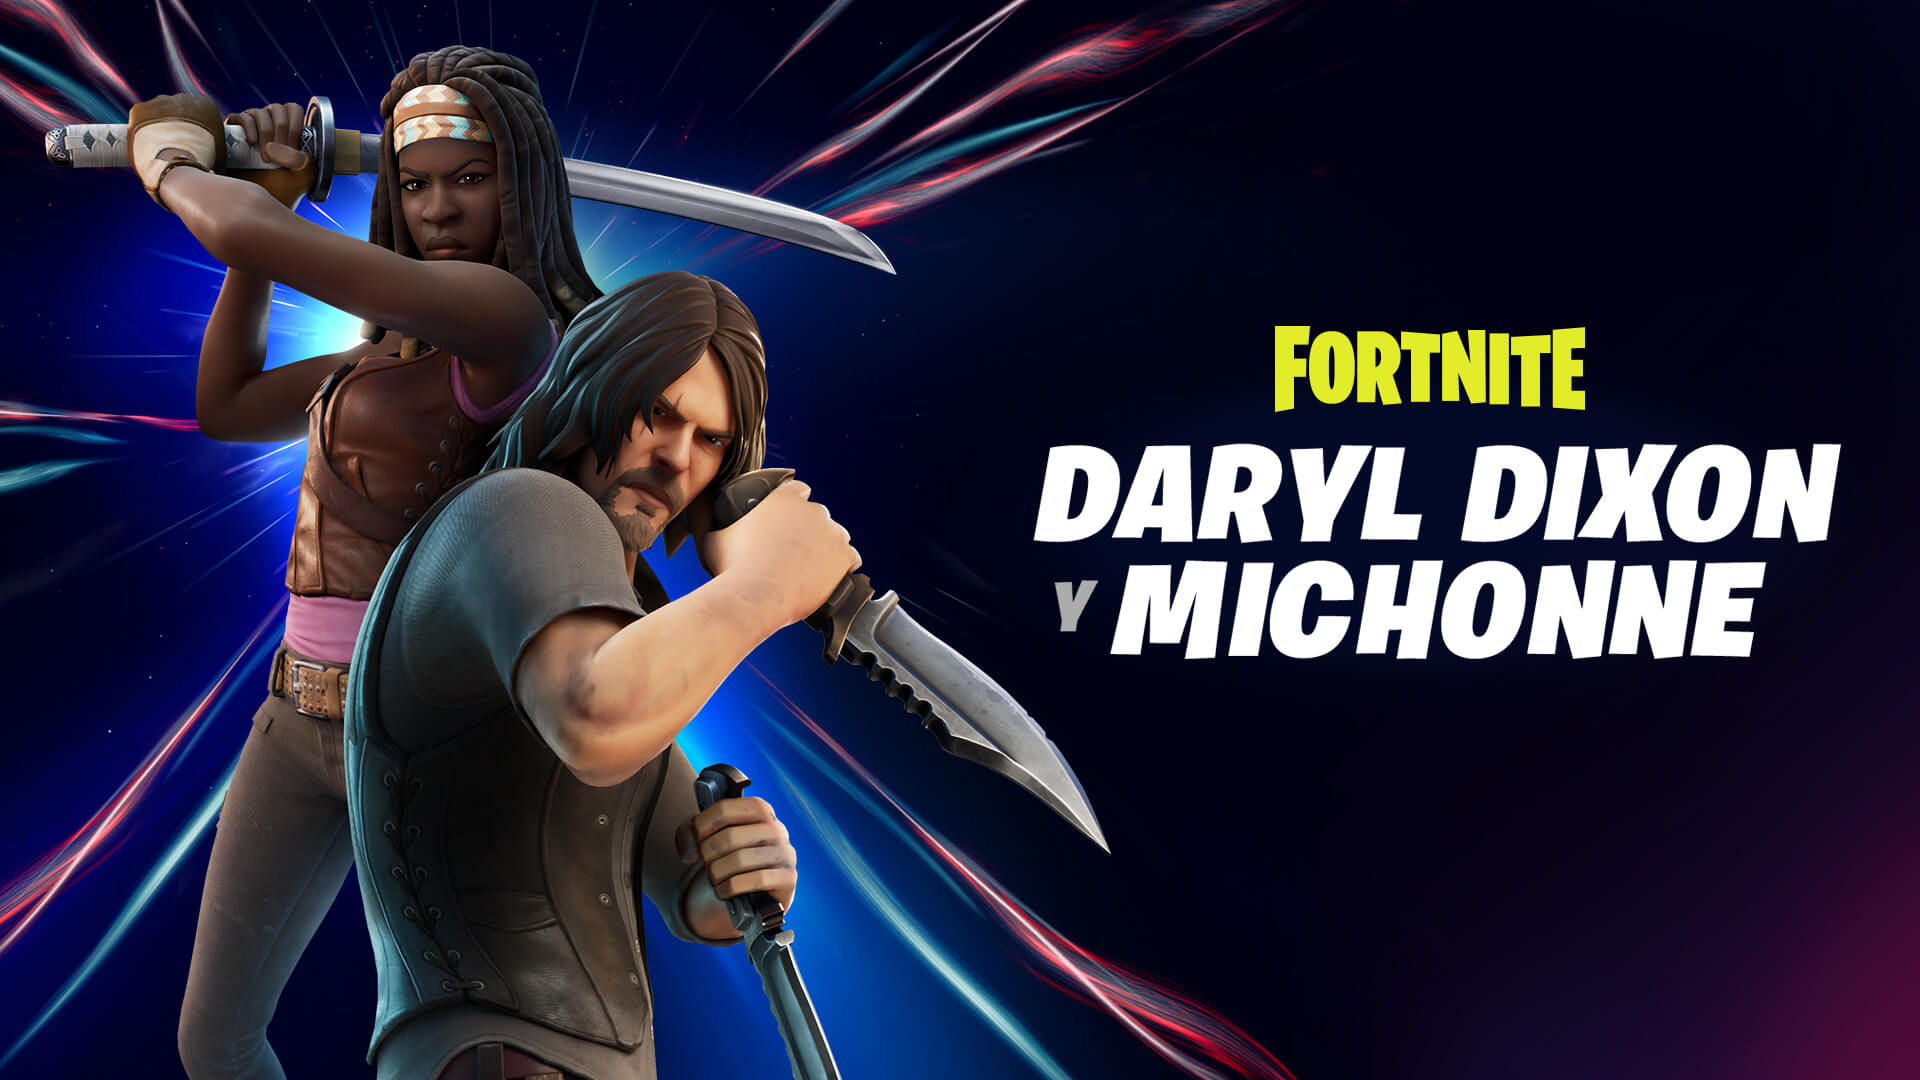 Los caminantes y Cazadores tienen algo que temer. ¡Daryl Dixon y Michonne son los nuevos Cazadores que llegan a Fortnite!